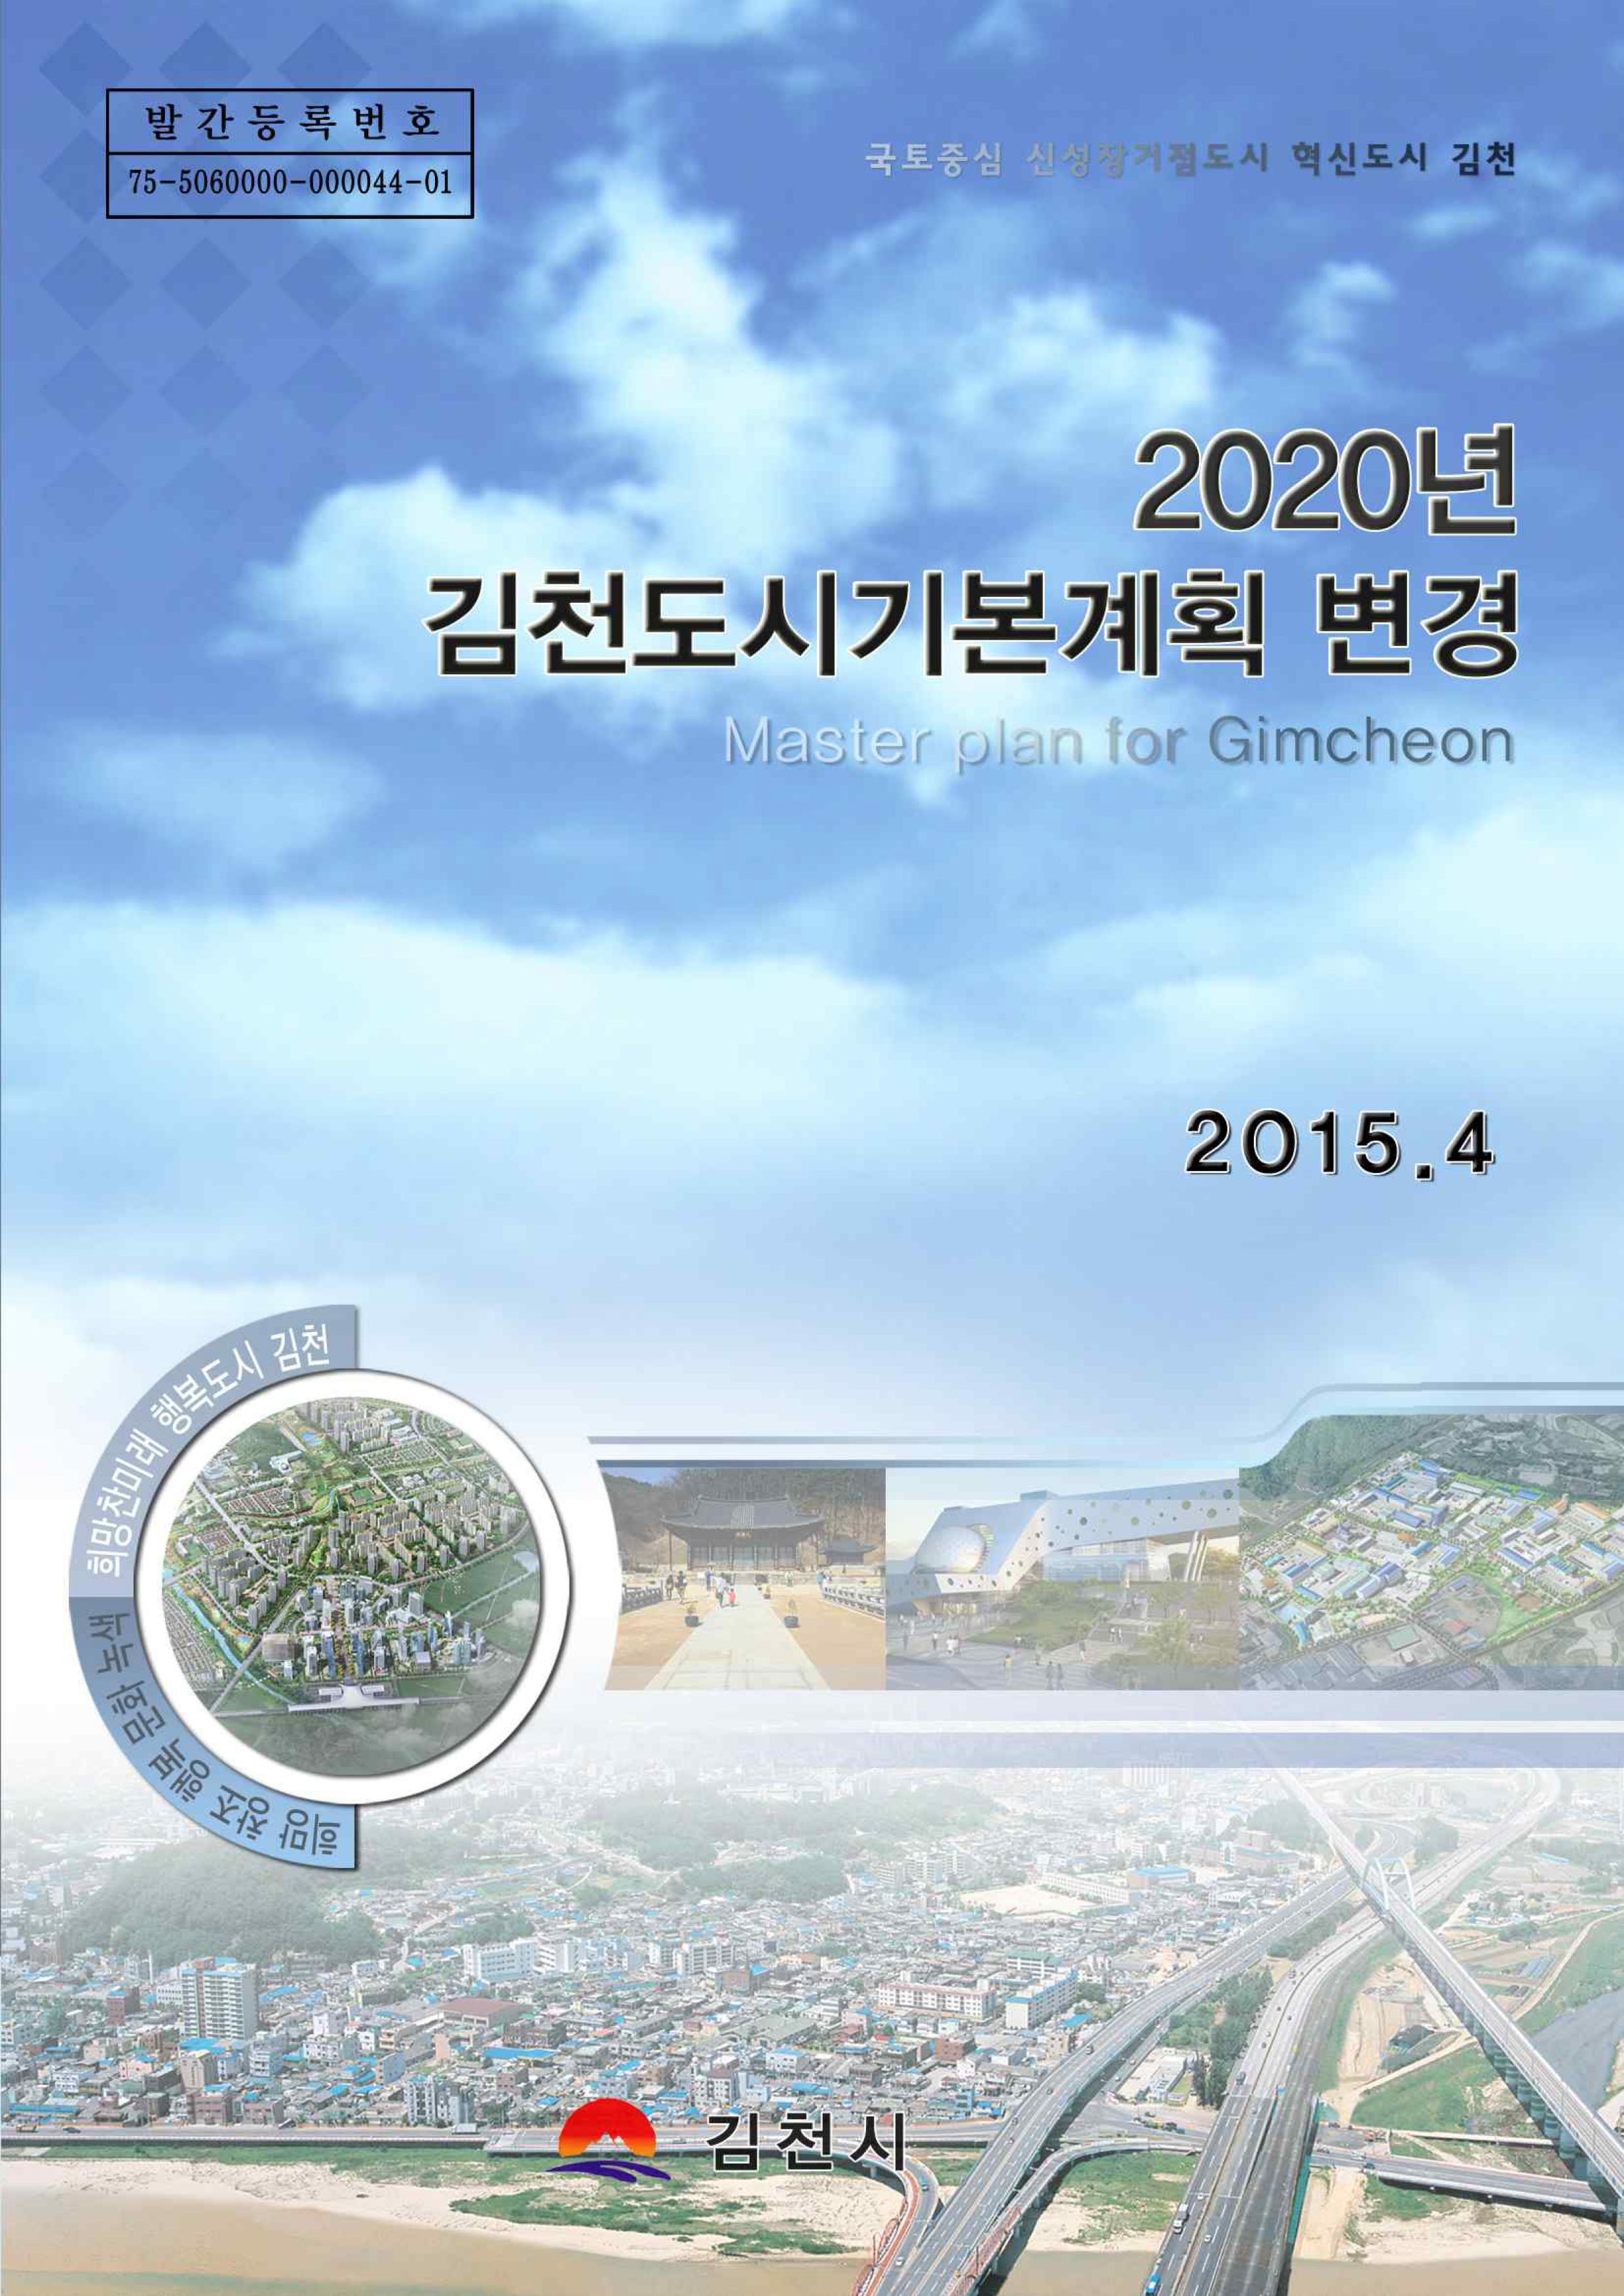 2020 김천도시기본계획 변경